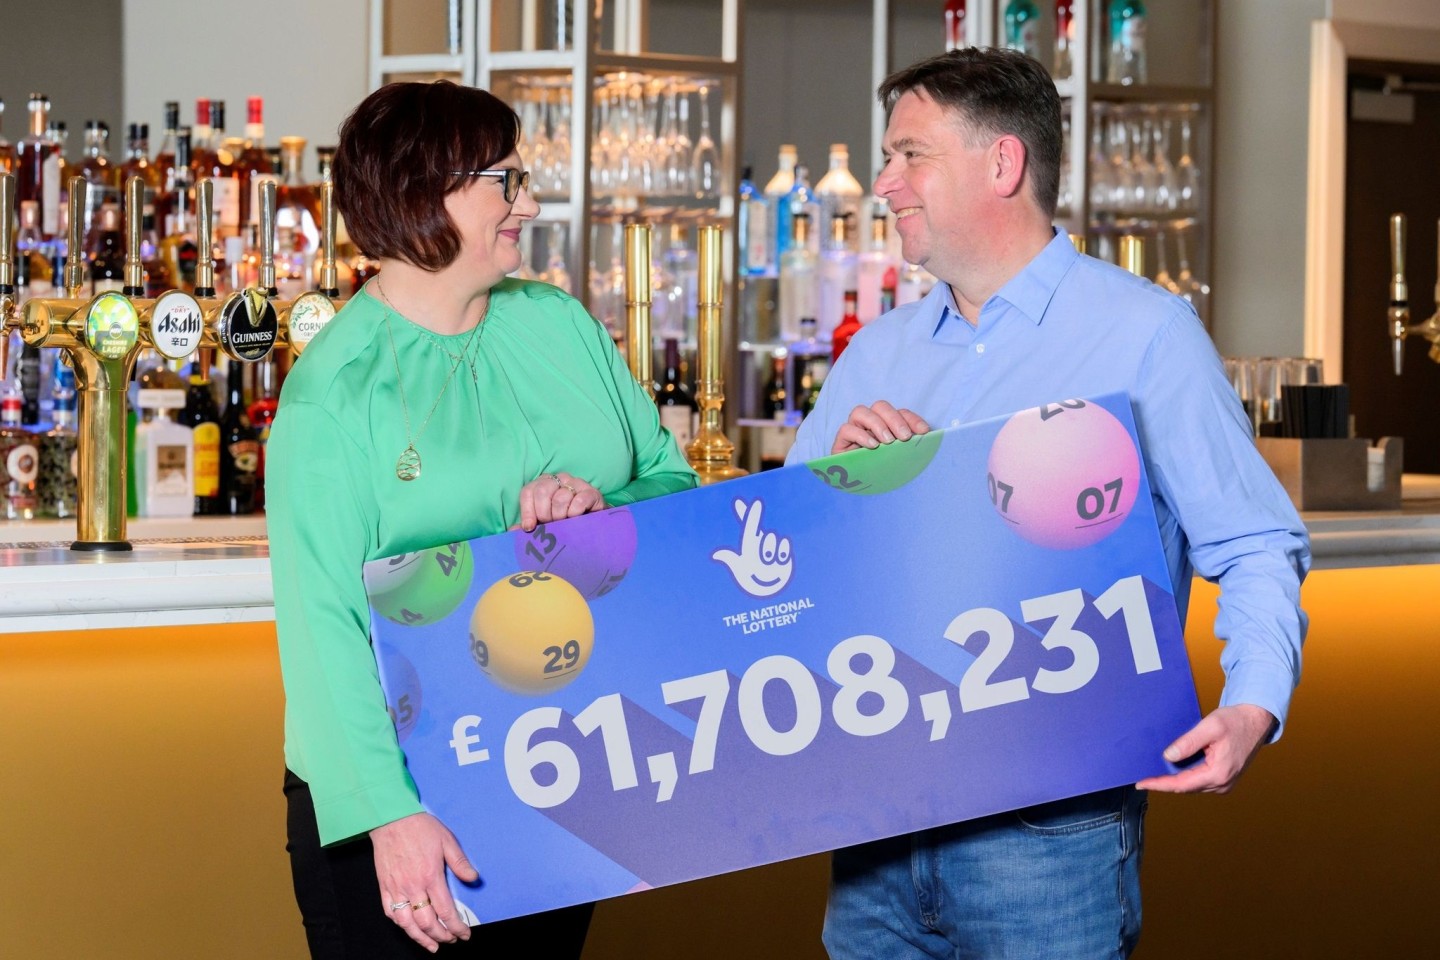 Debbie und Richard Nuttall nehmen 61.708.231 Pfund (etwa 71 Millionen Euro) mit nach Hause.